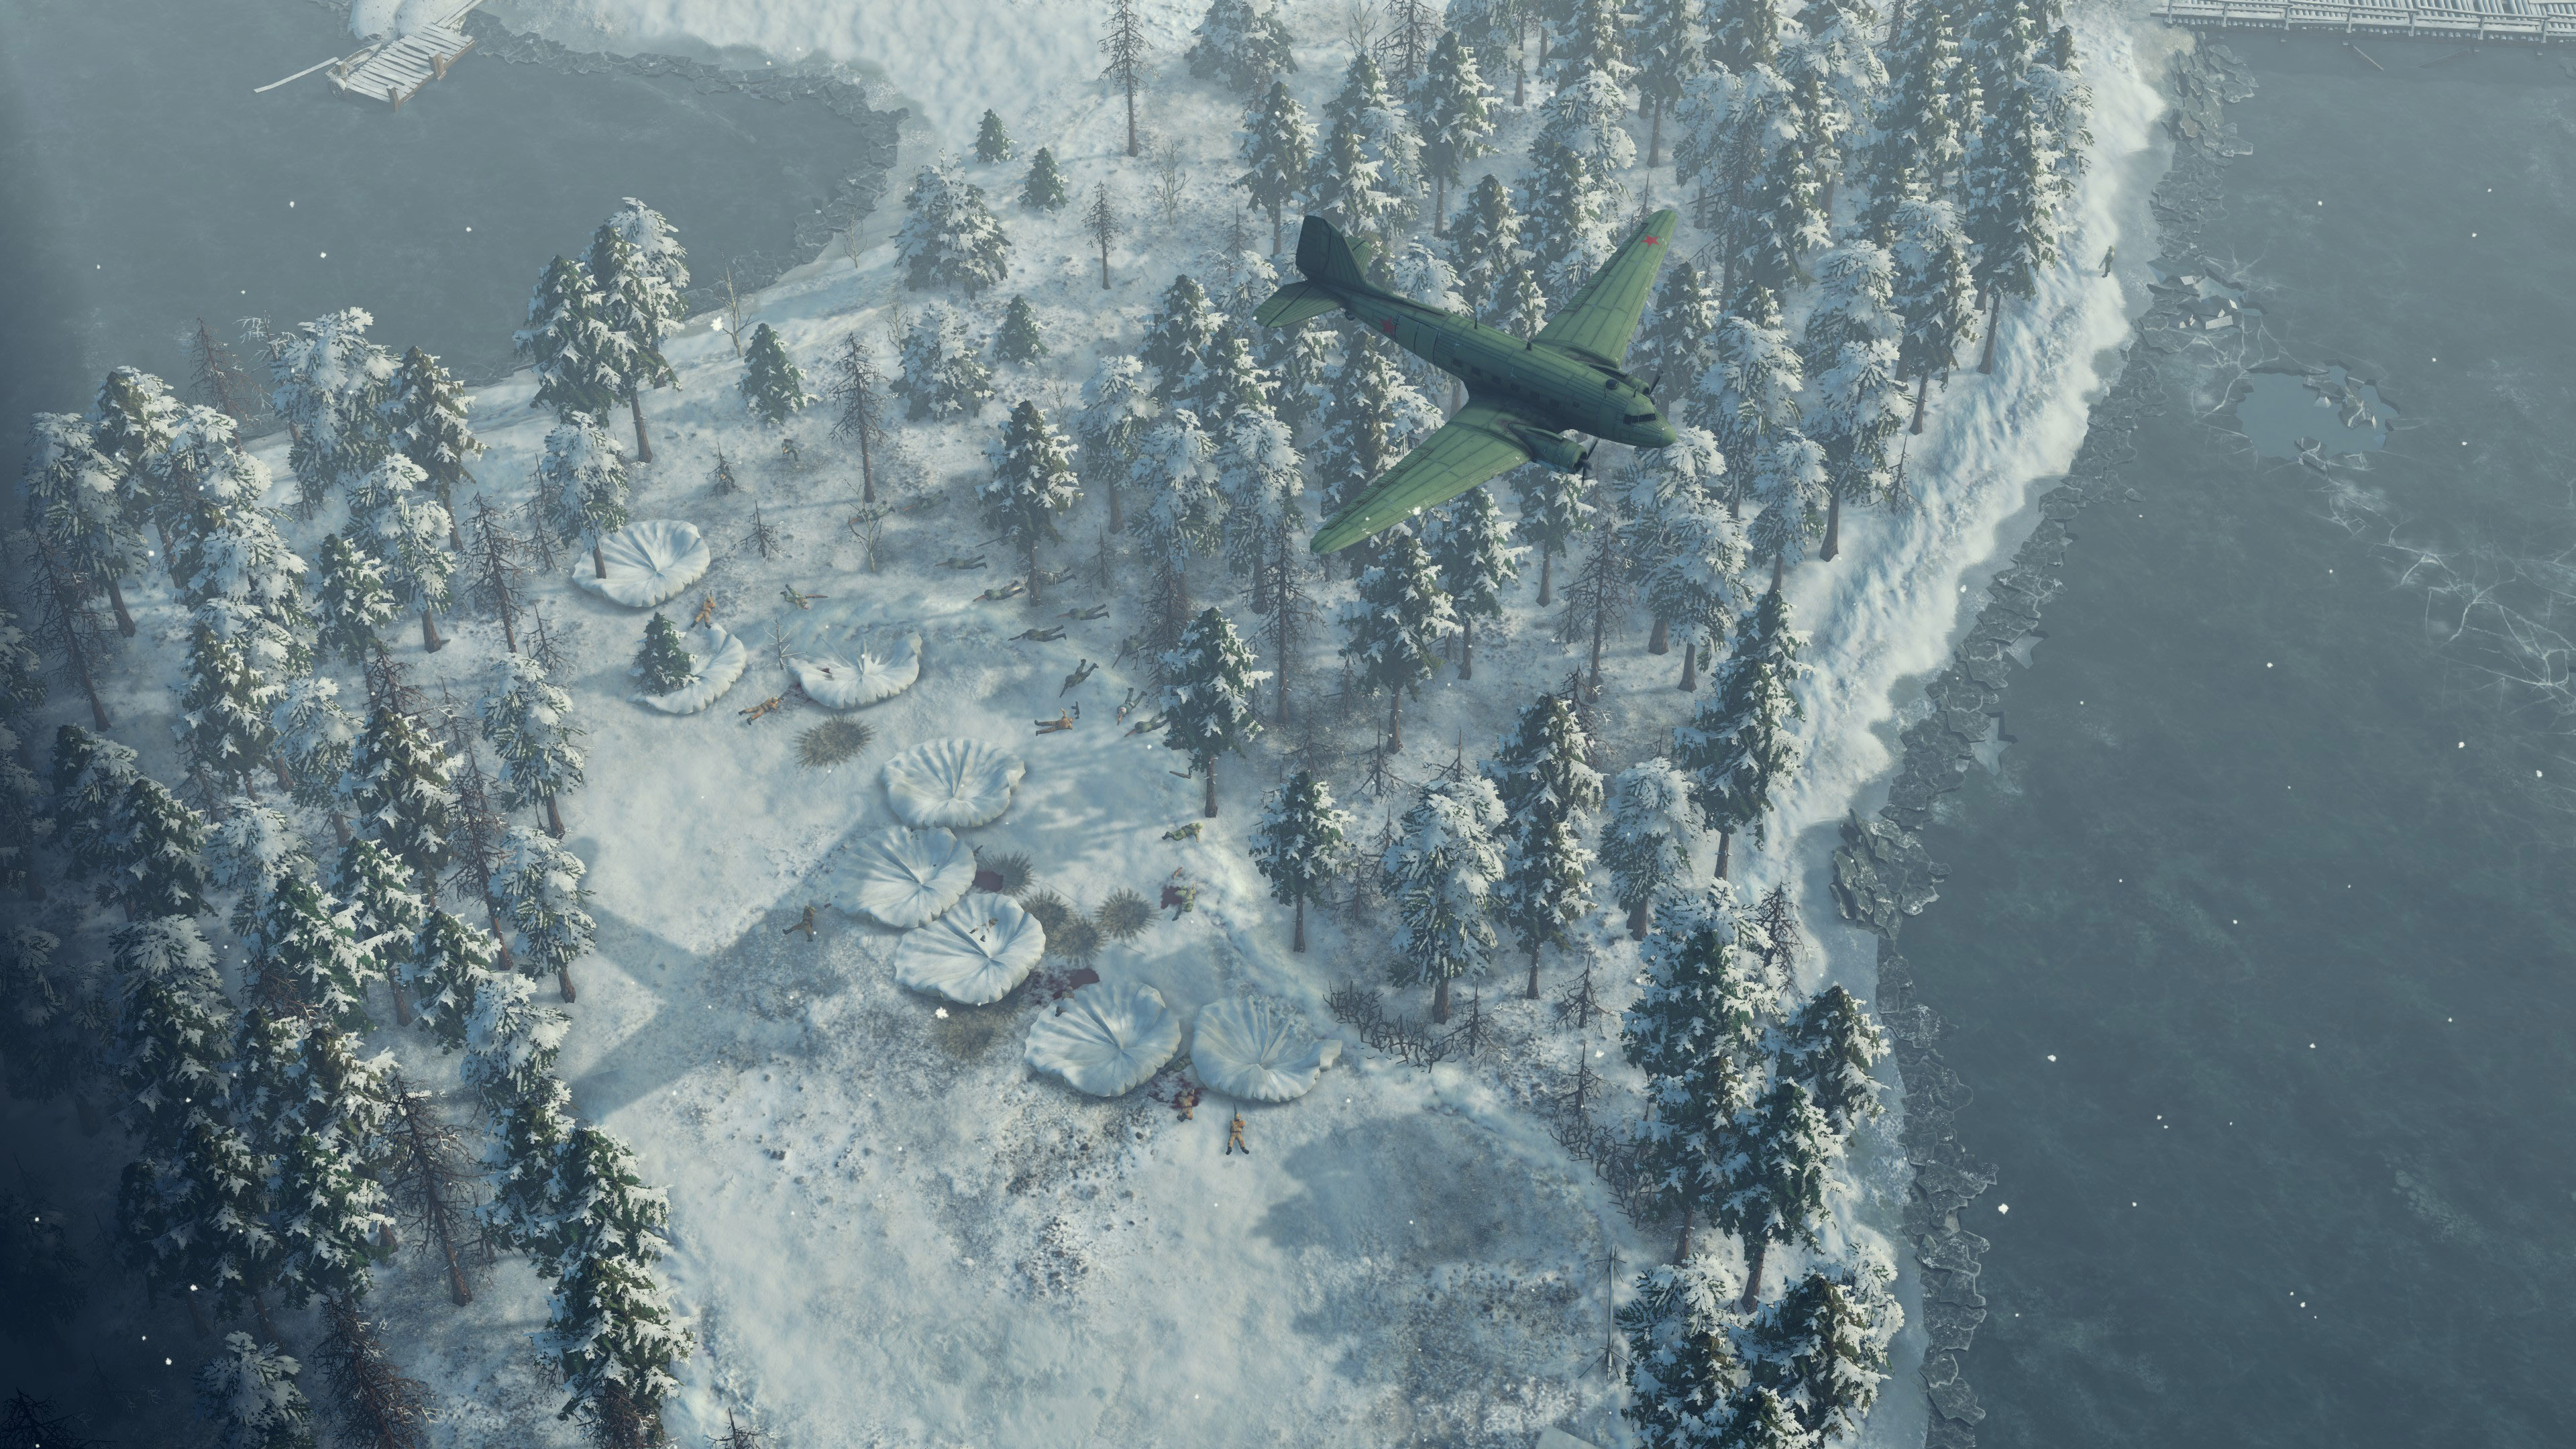 Sudden Strike 4 - Finland: Winter Storm screenshot